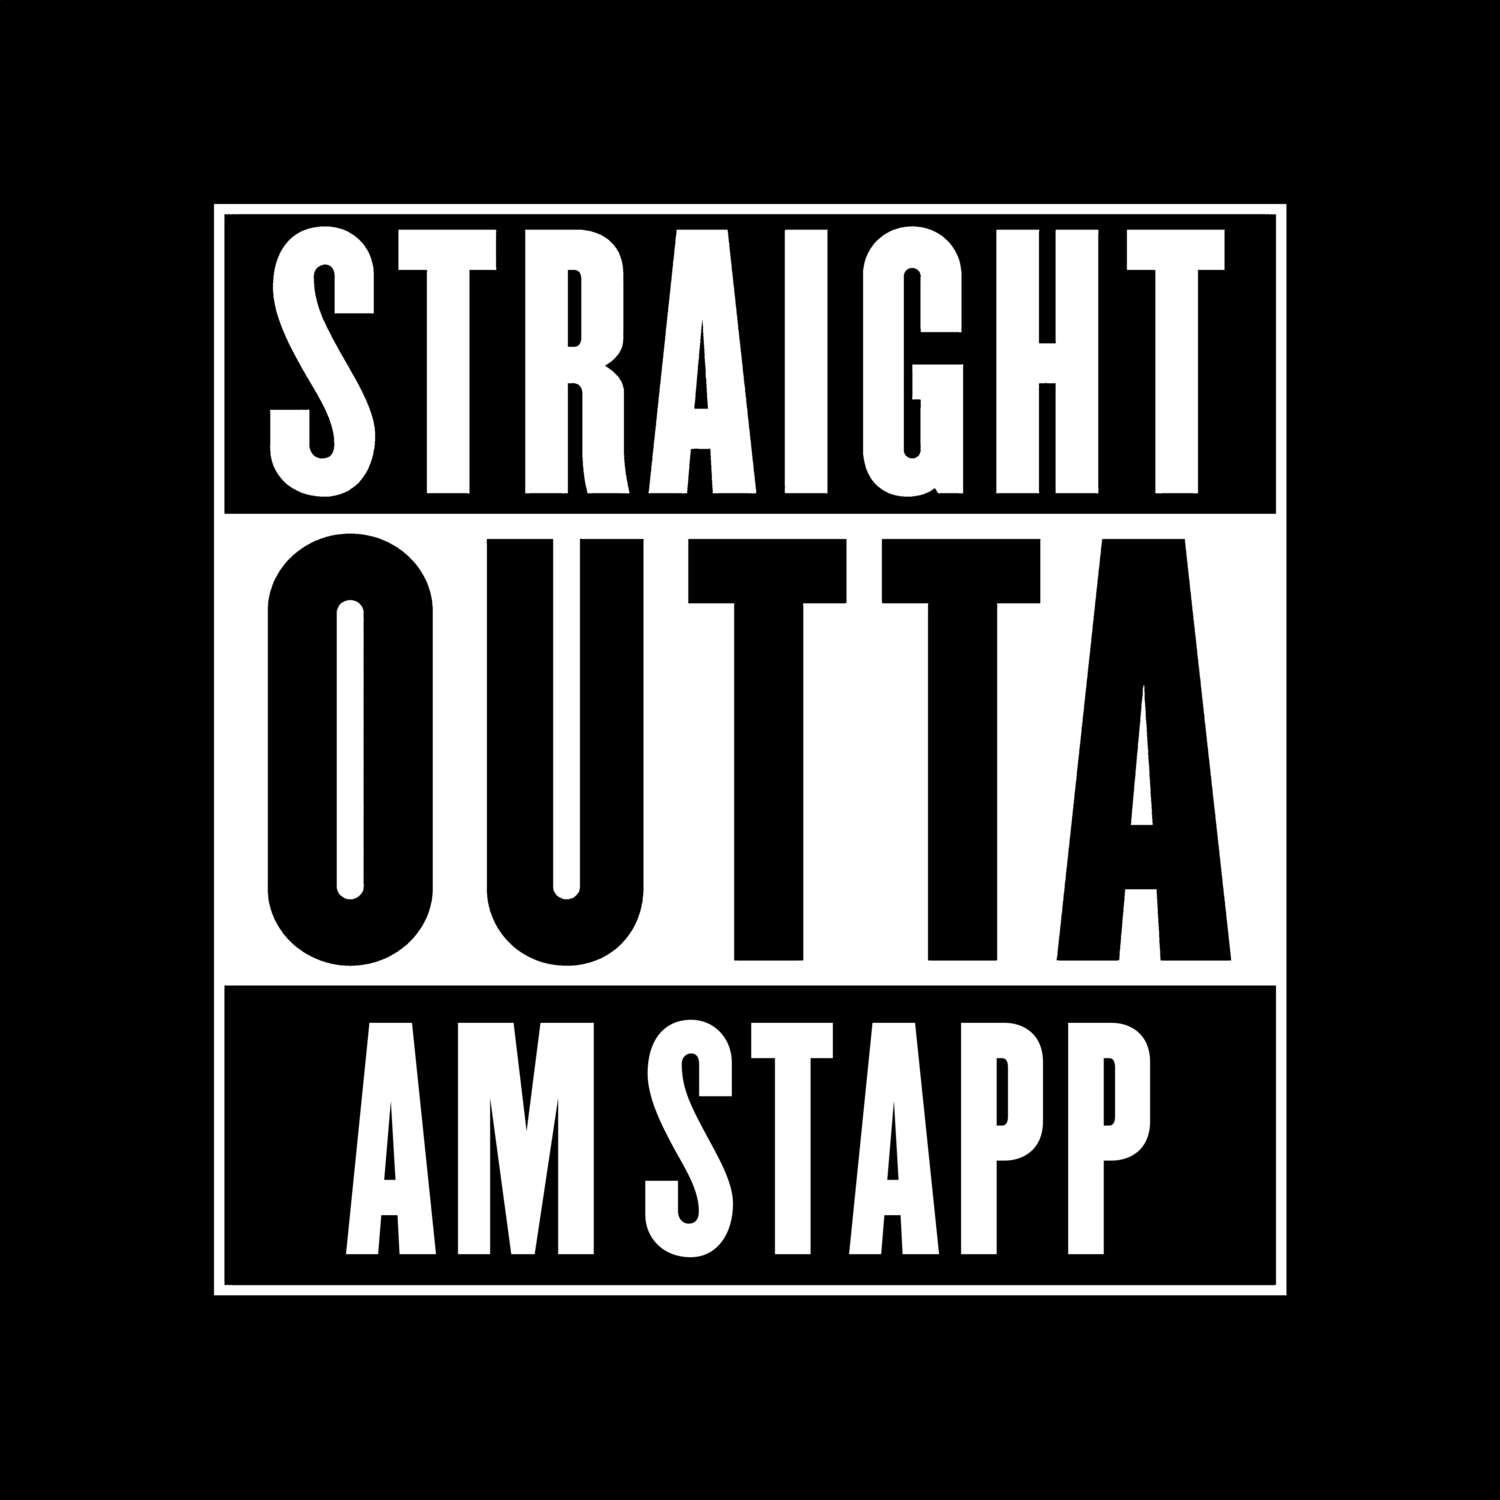 Am Stapp T-Shirt »Straight Outta«